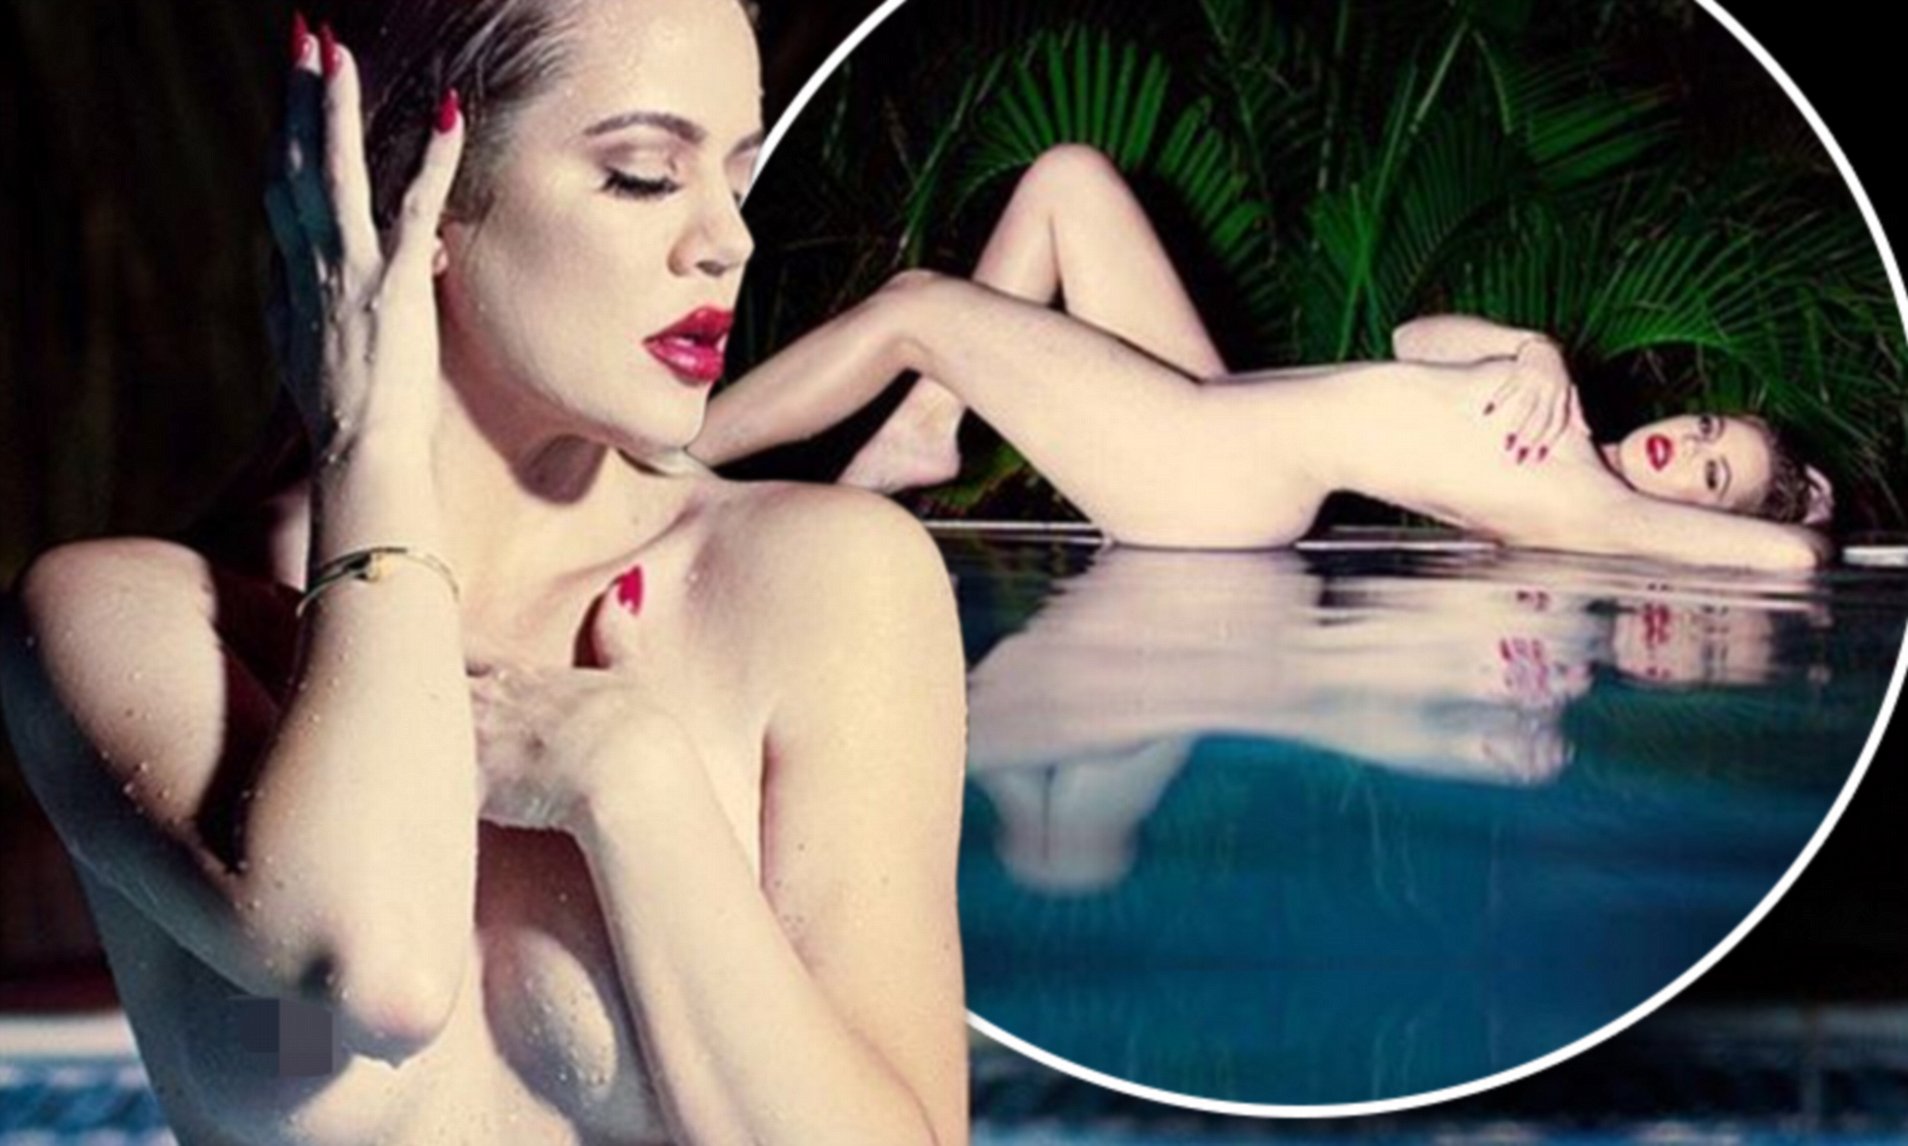 anthony franchina recommends khloe kardashian nude photoshoot pic